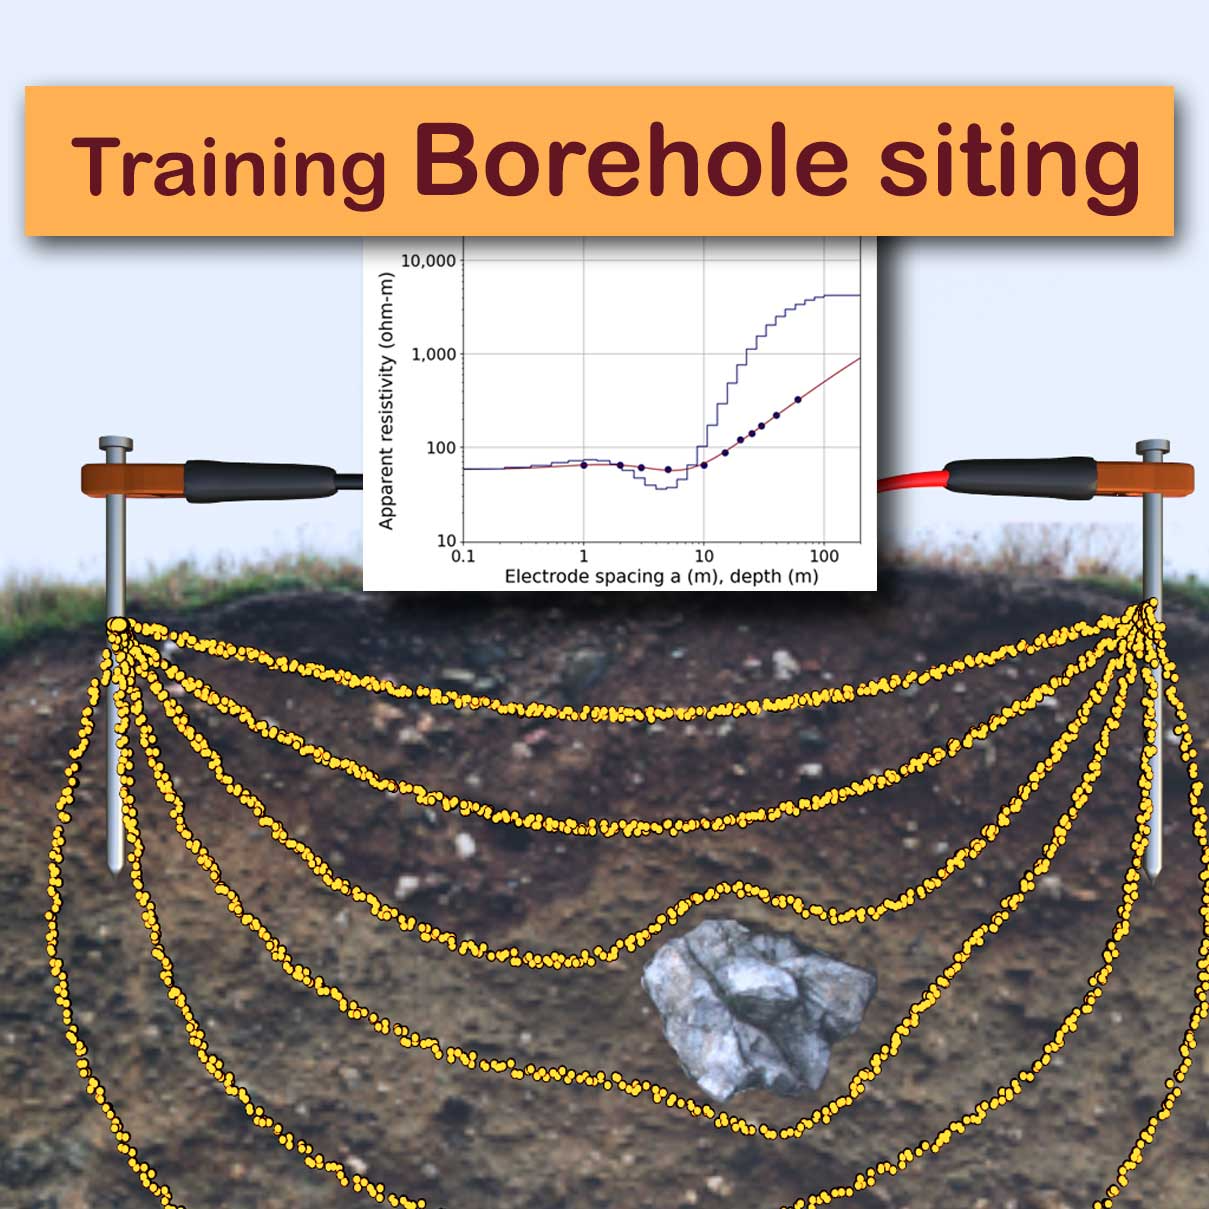 Basic training borehole siting